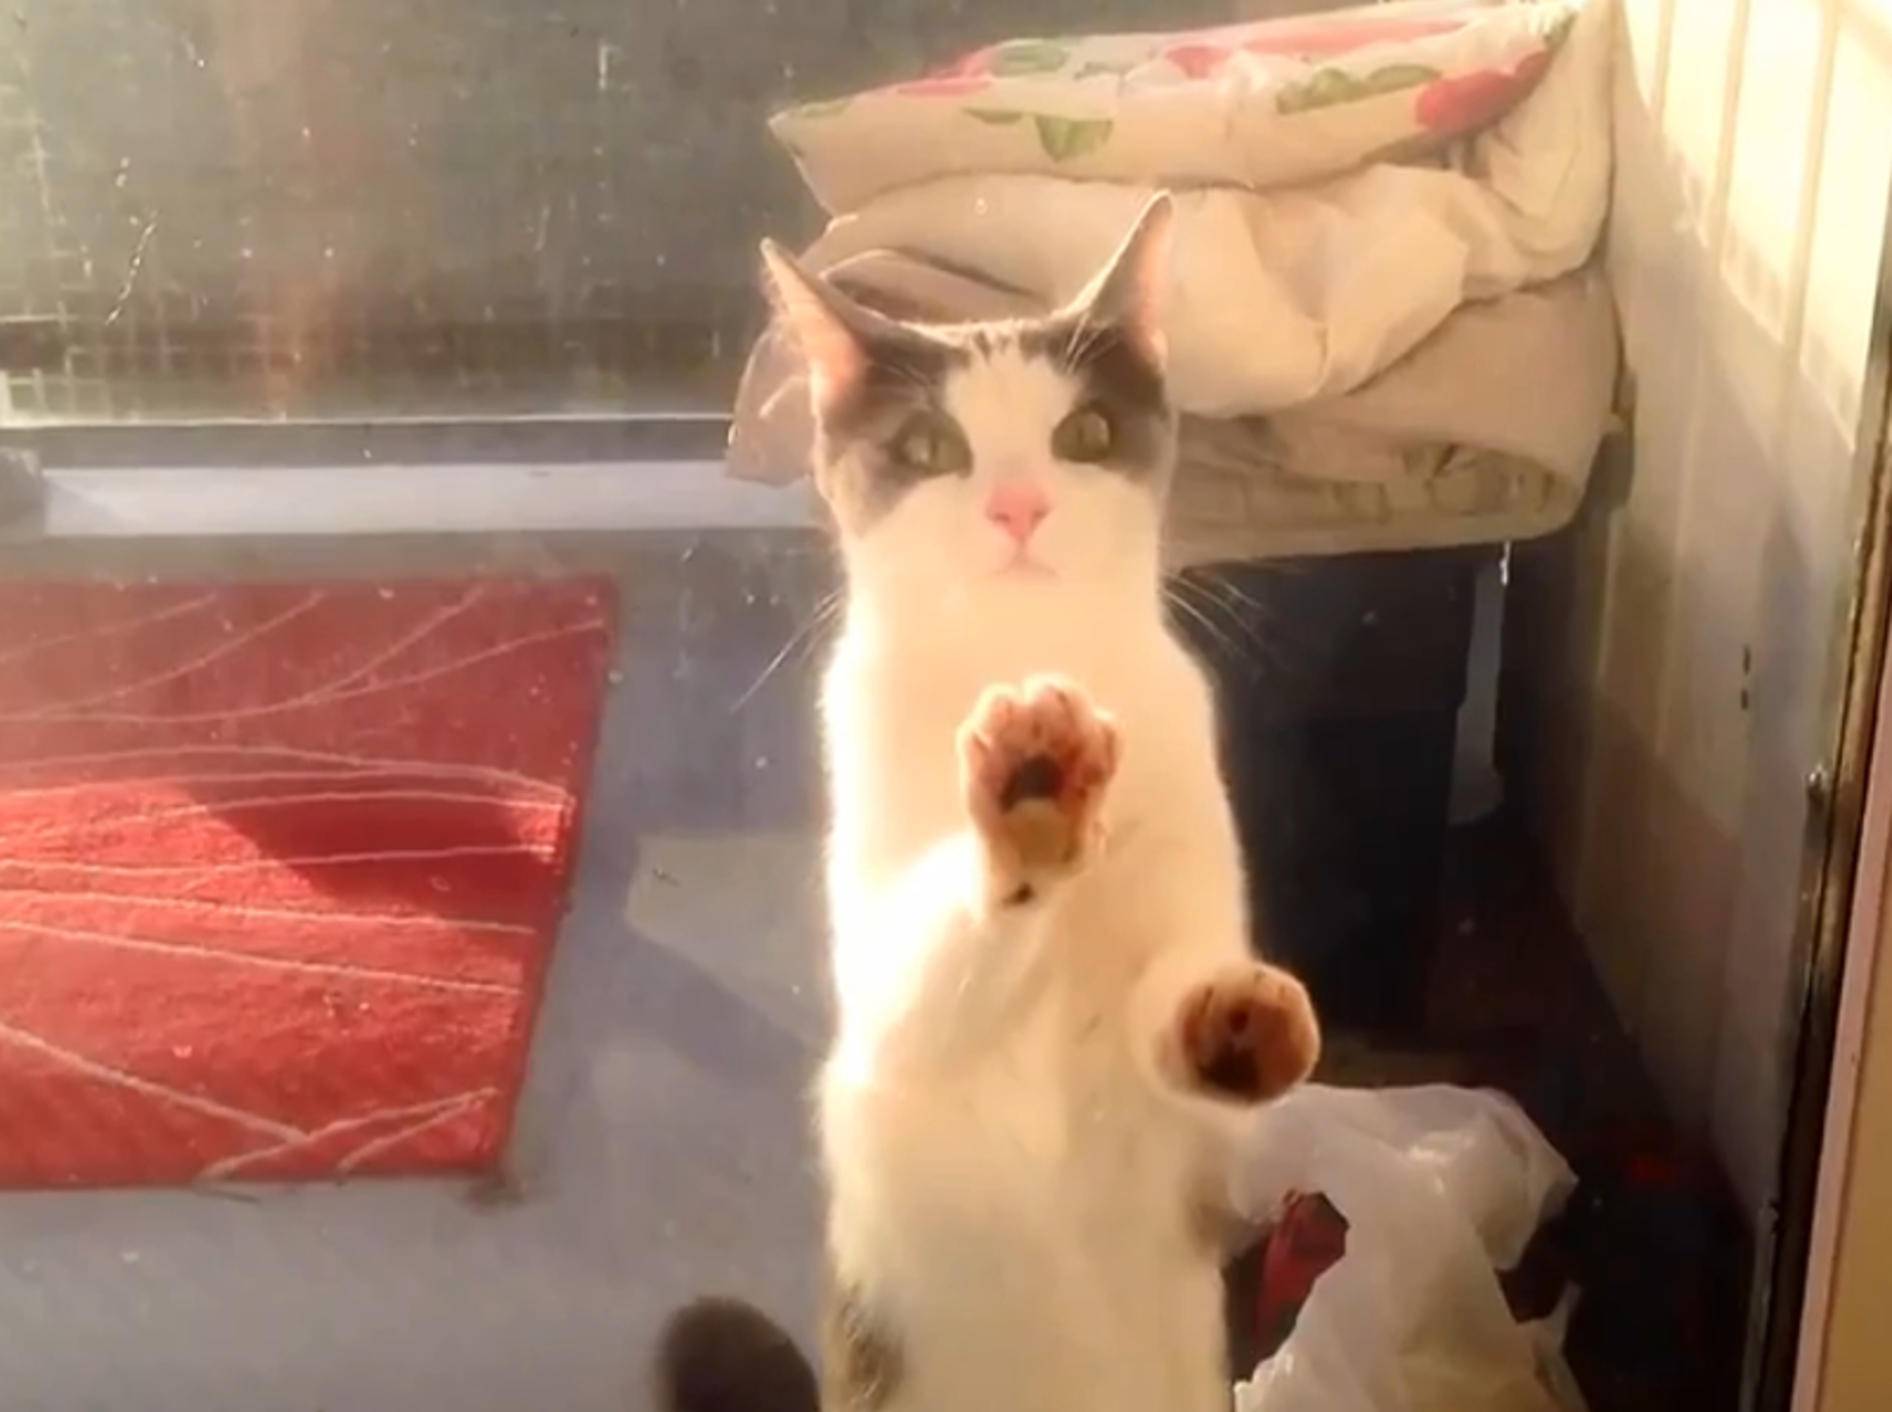 Katzen-Compilation: "Lasst mich endlich hinein!" – Bild: YouTube / CrazyFunnyStuffCFS